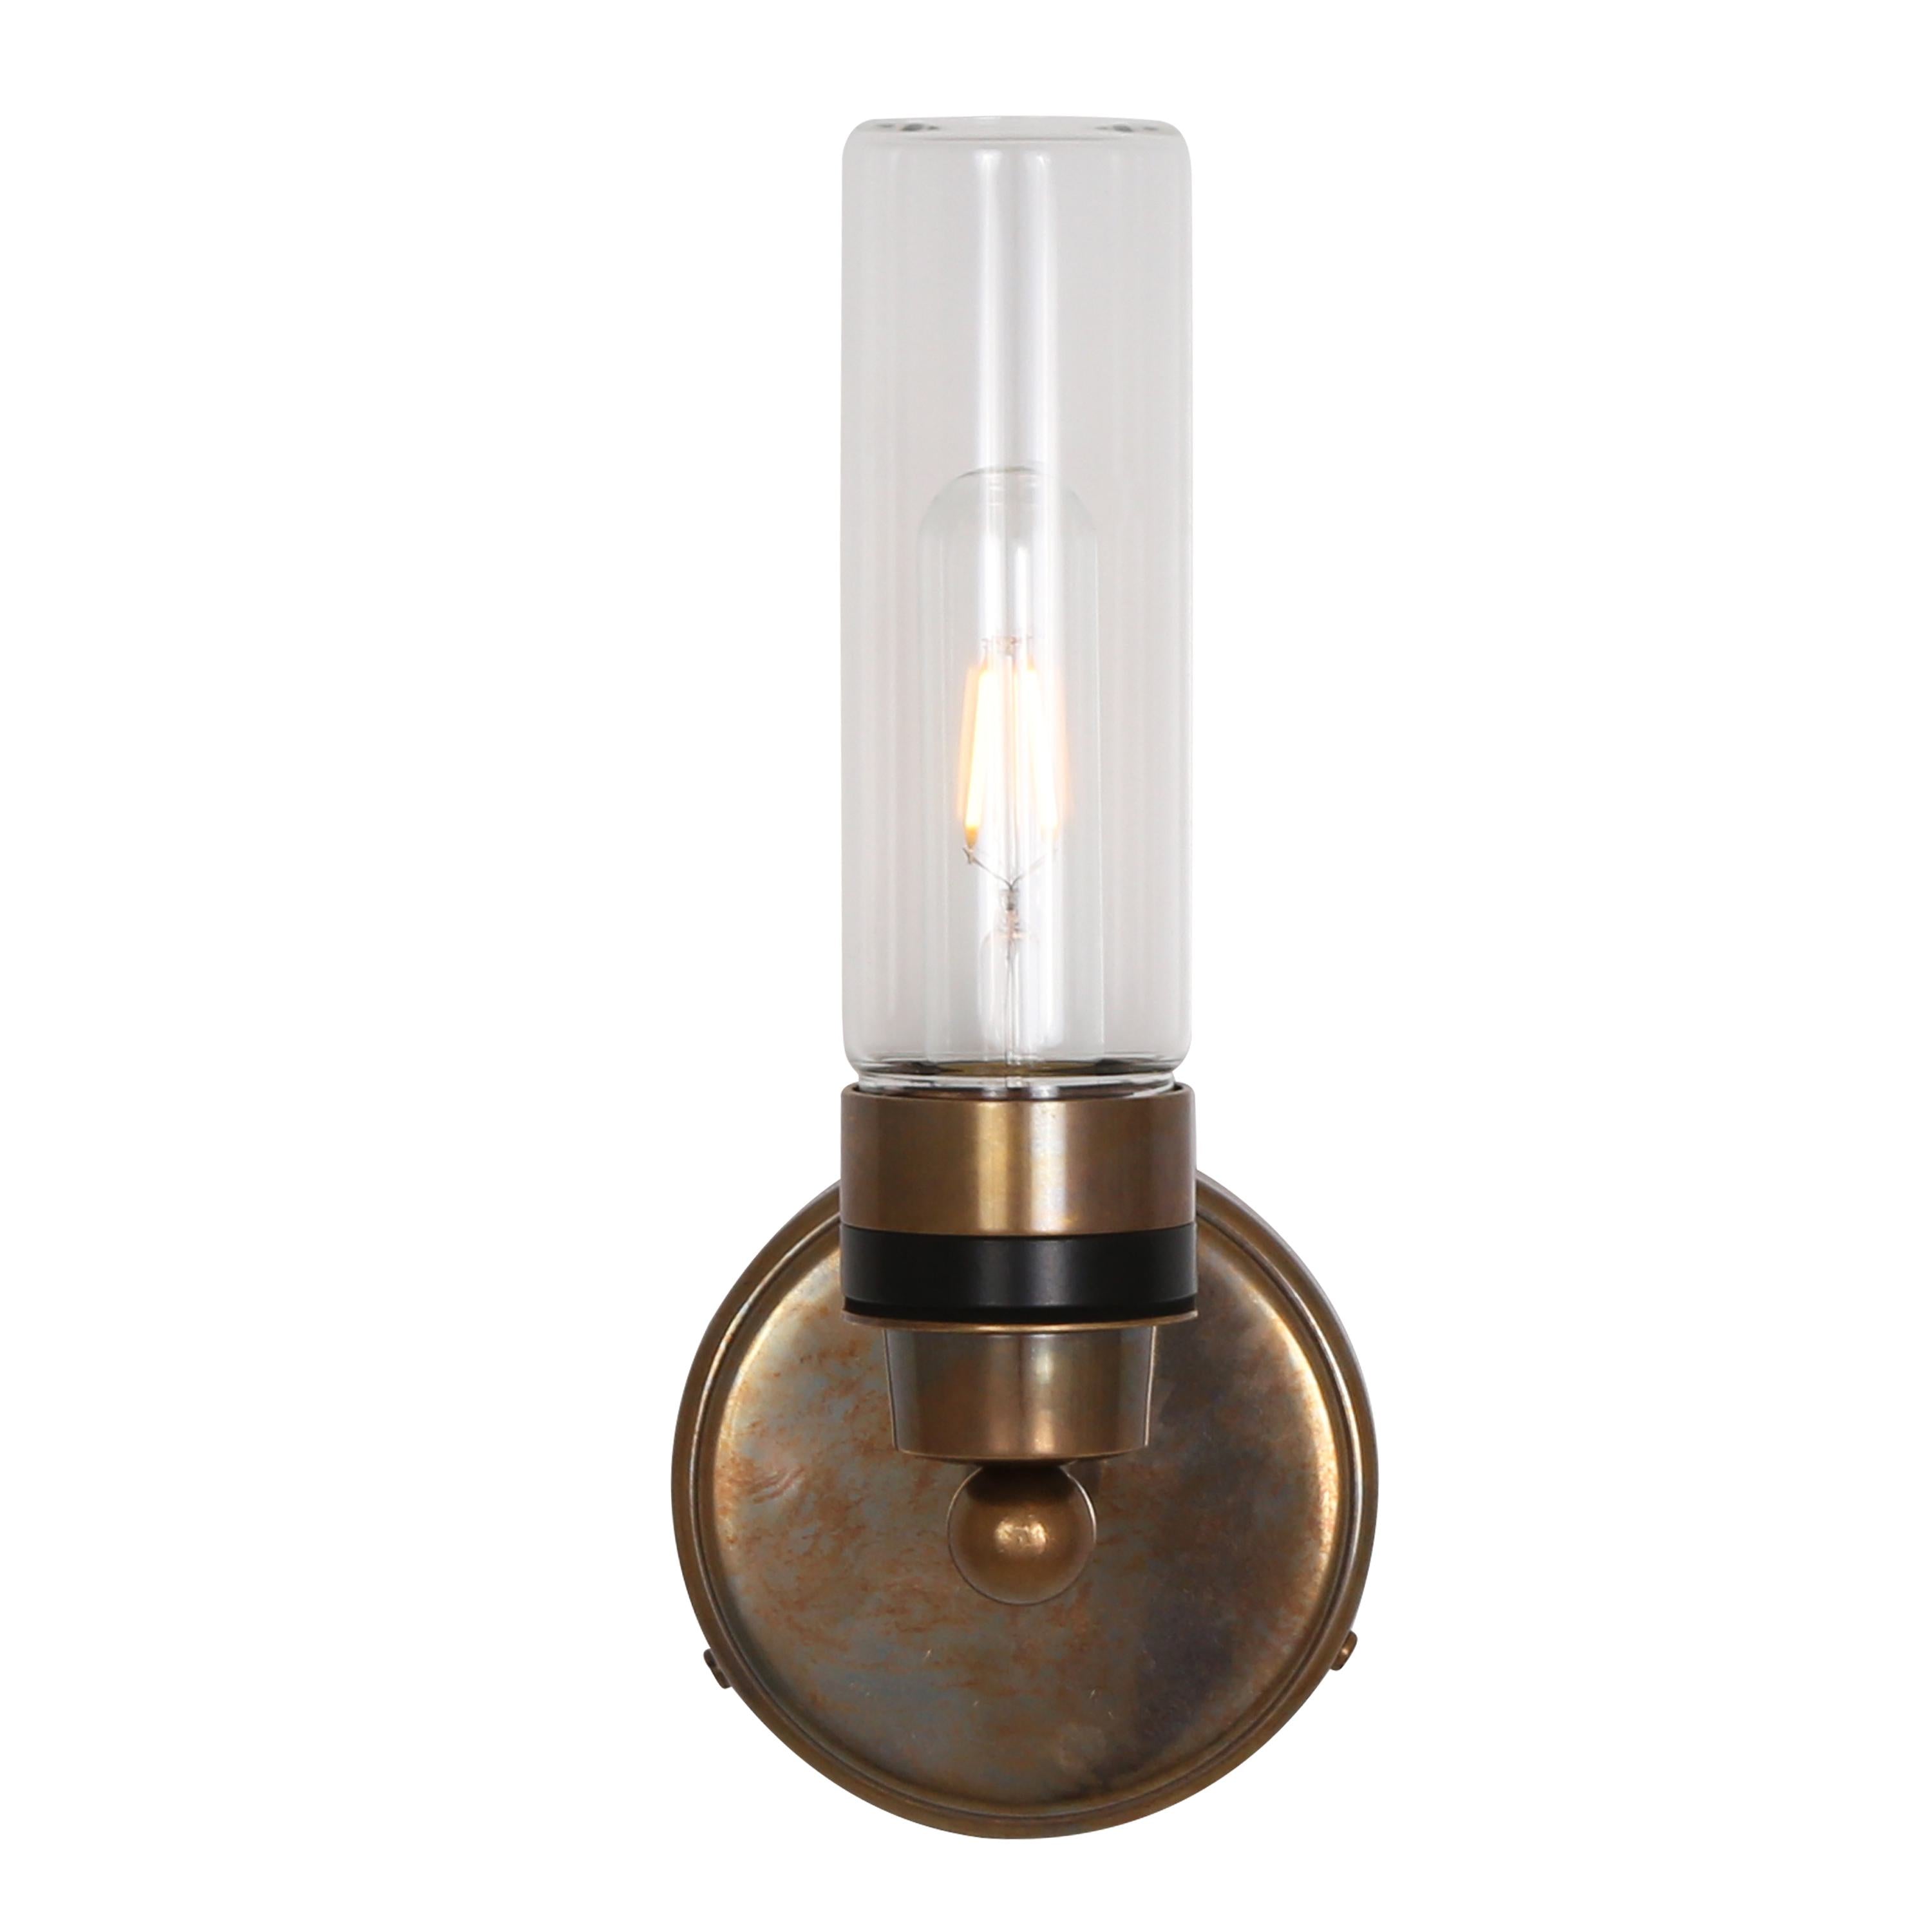 Mullan Lighting - Mullan Lighting , Brass Glass - Union Lighting  Luminaires Decor — Union Lighting & Decor